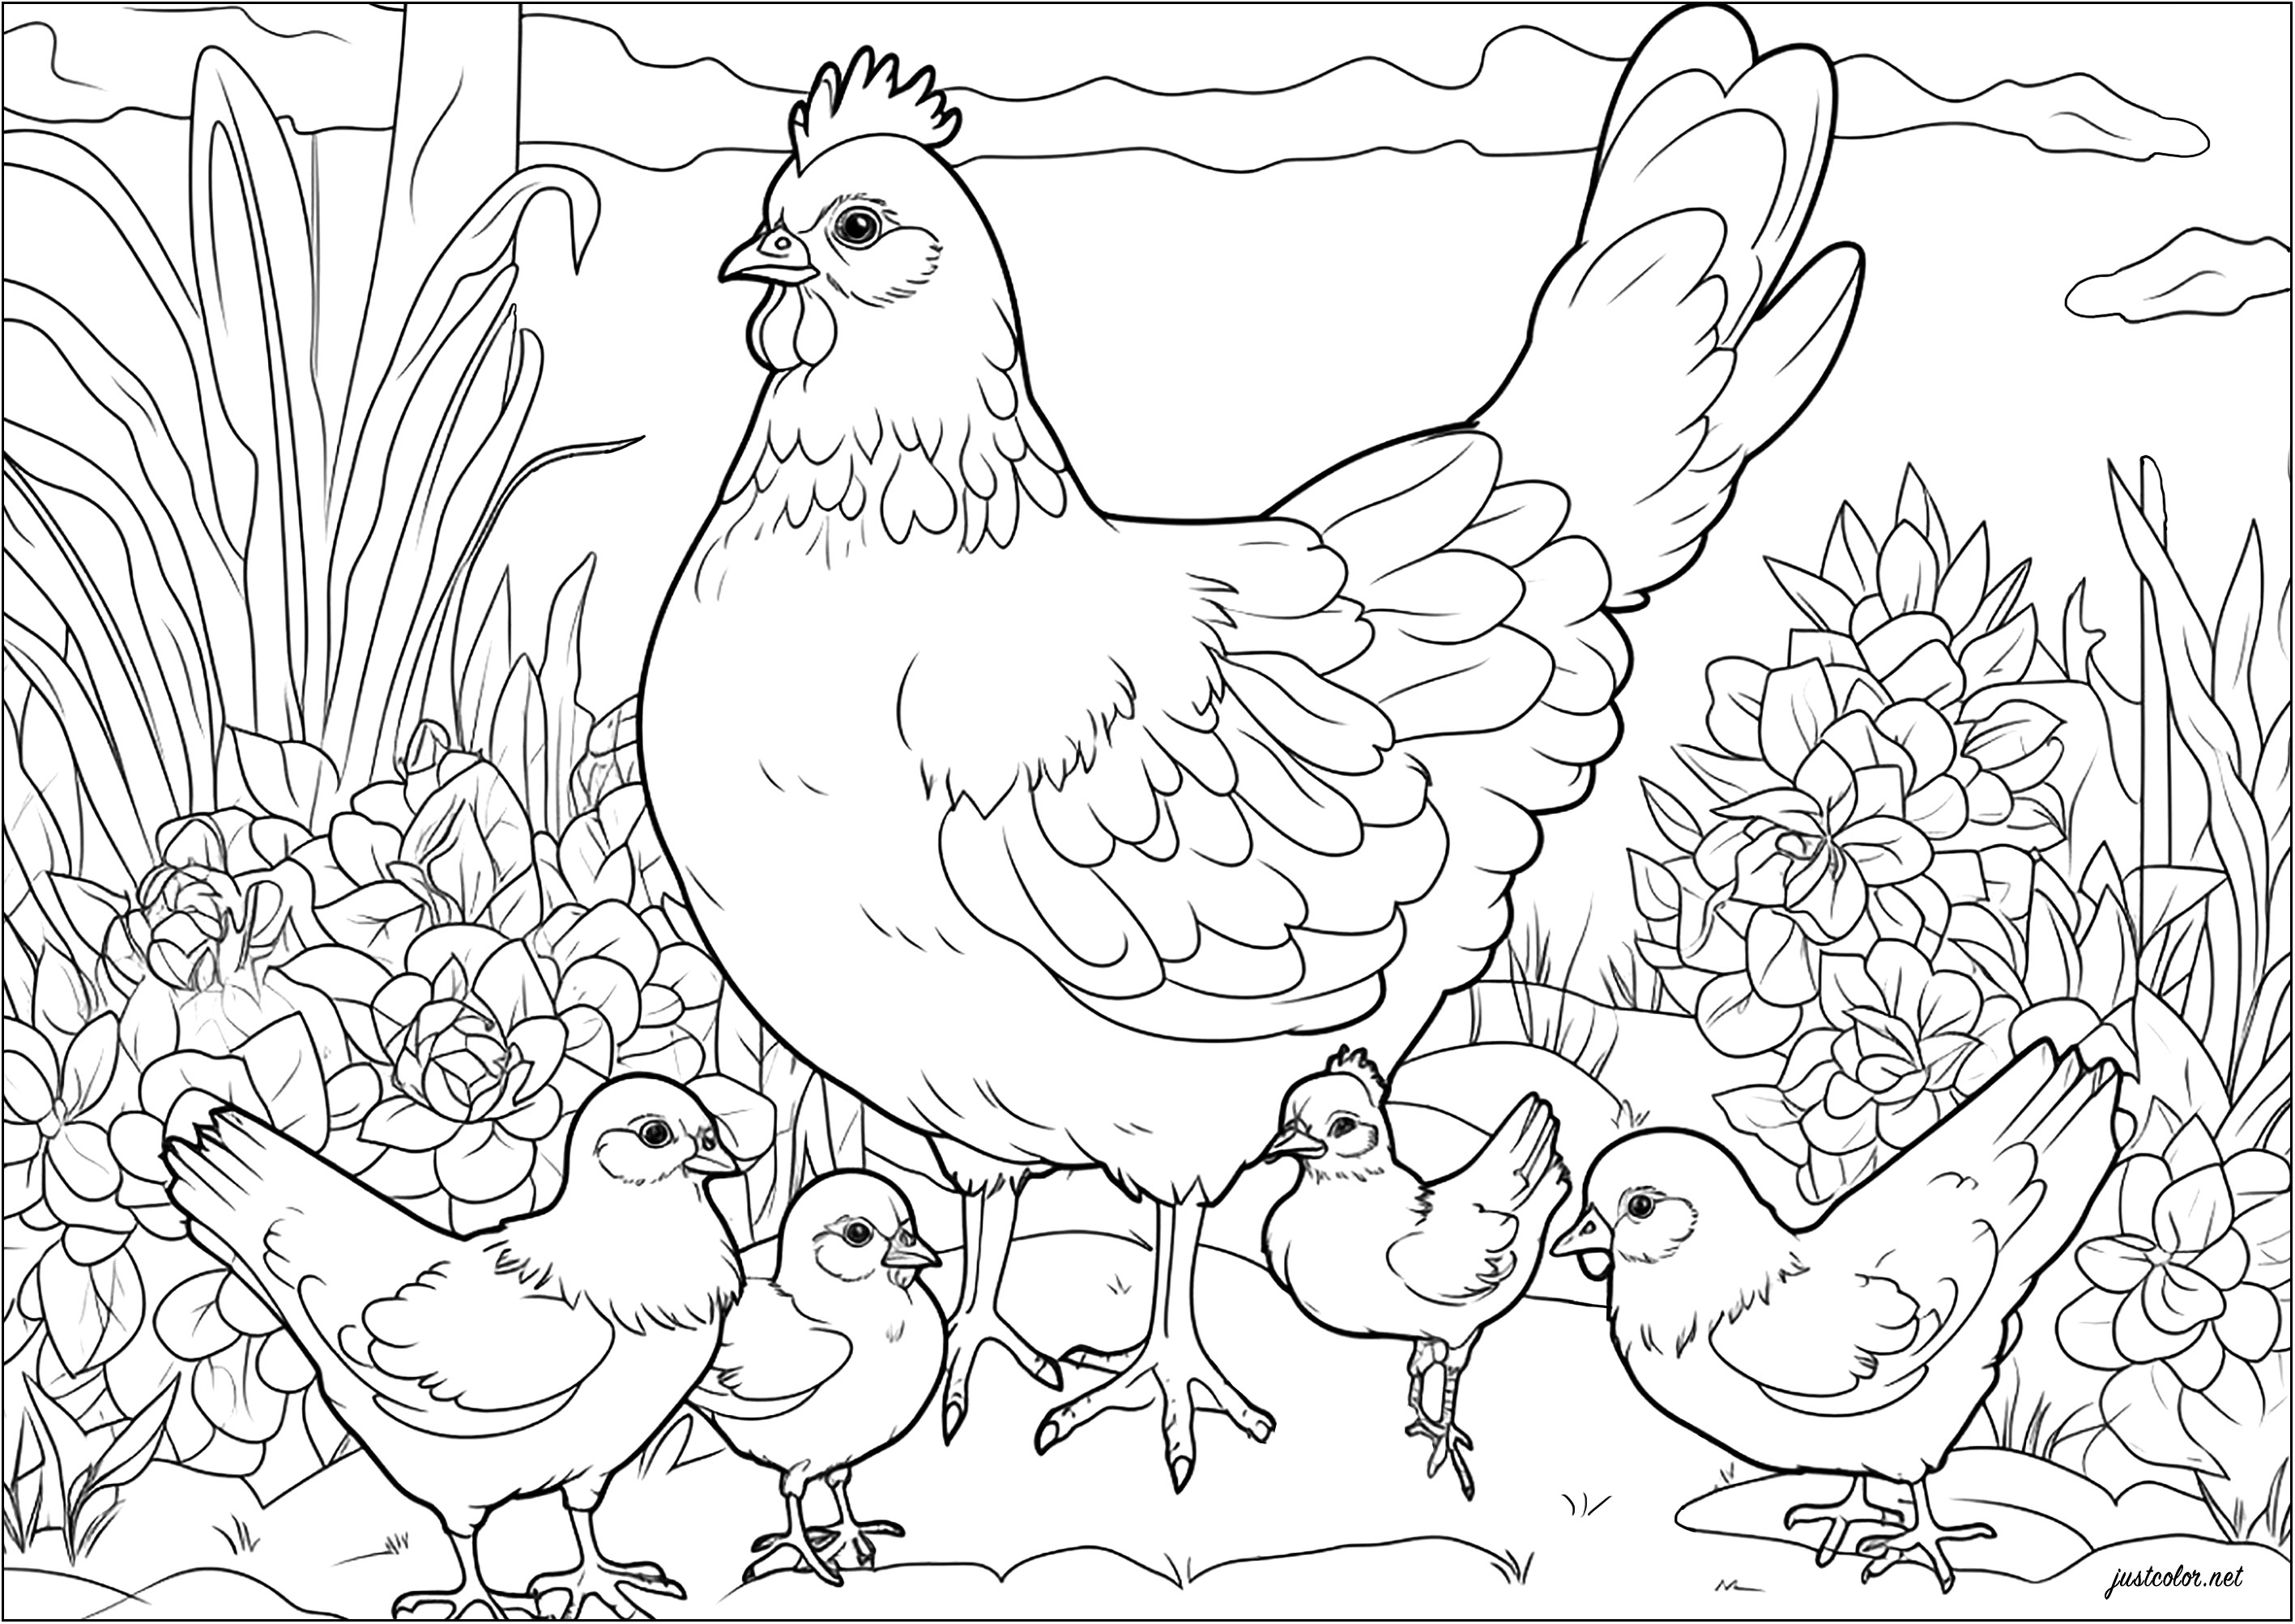 Coloração de uma galinha e dos seus pintos. Esta galinha protege orgulhosamente as suas crias.
